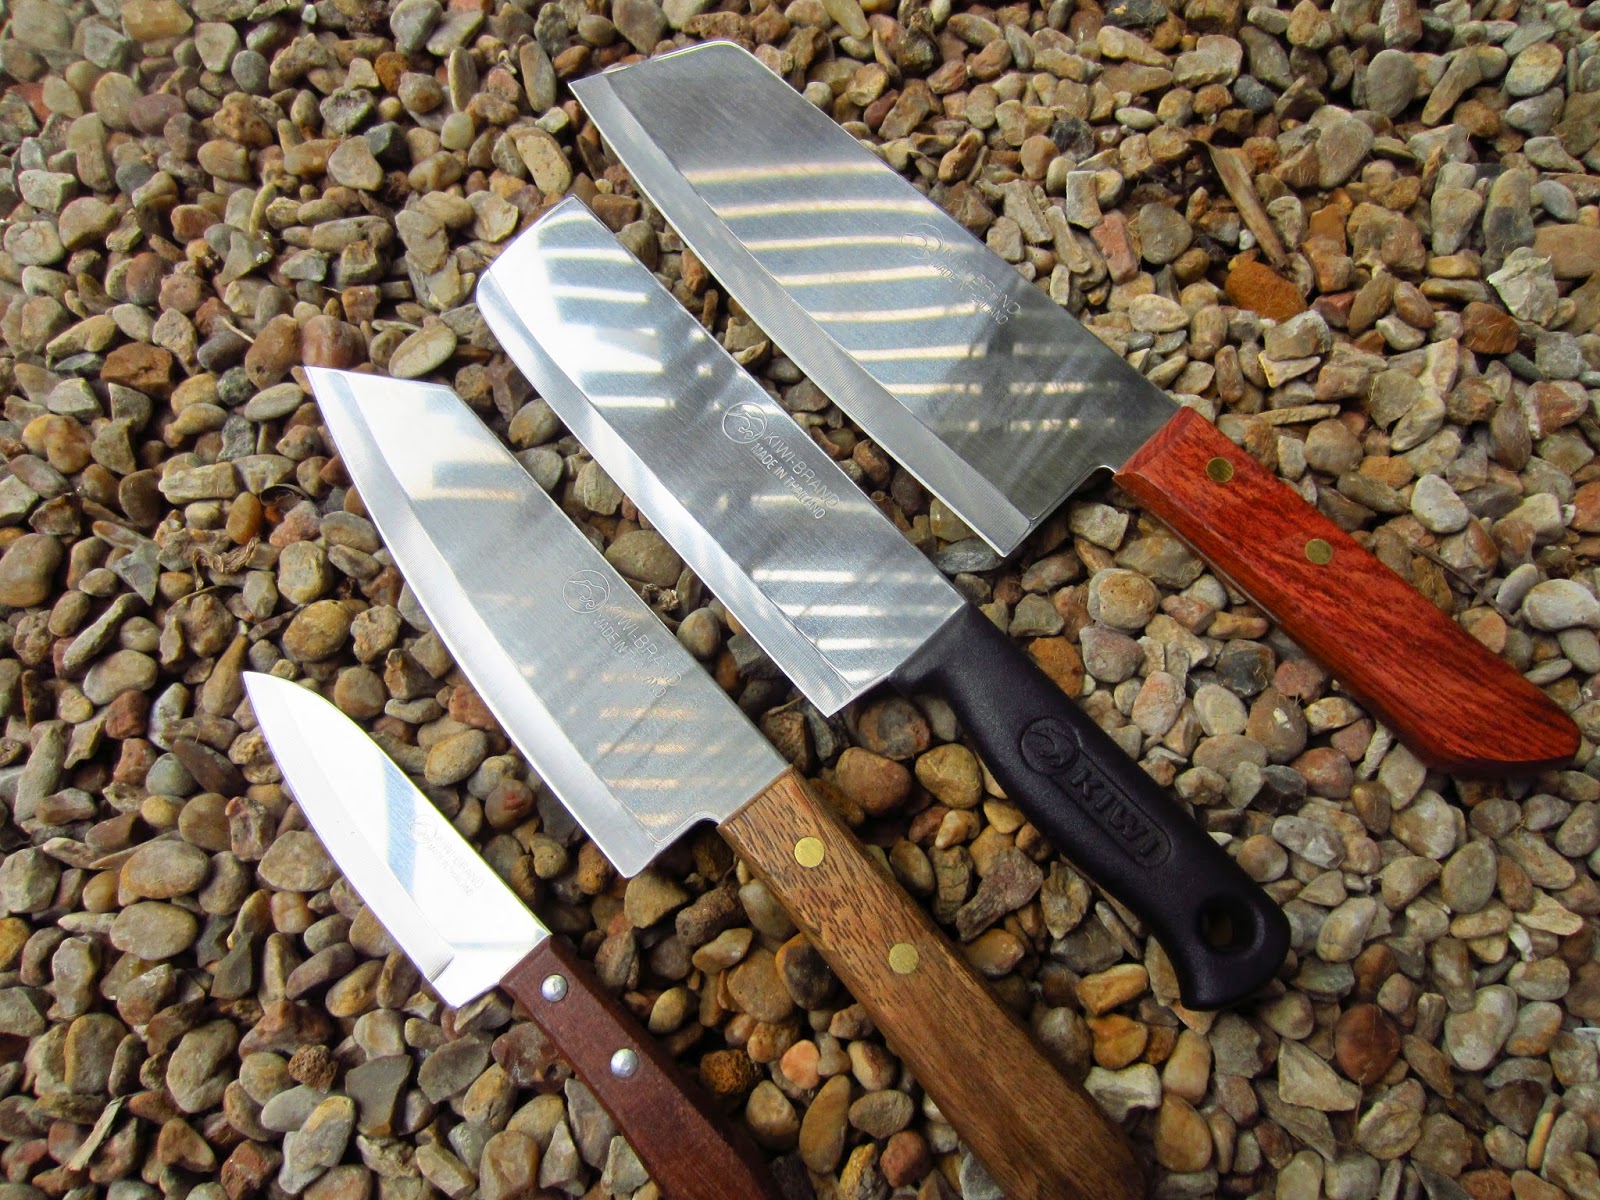 Kiwi Thailand Knives - ImportFood